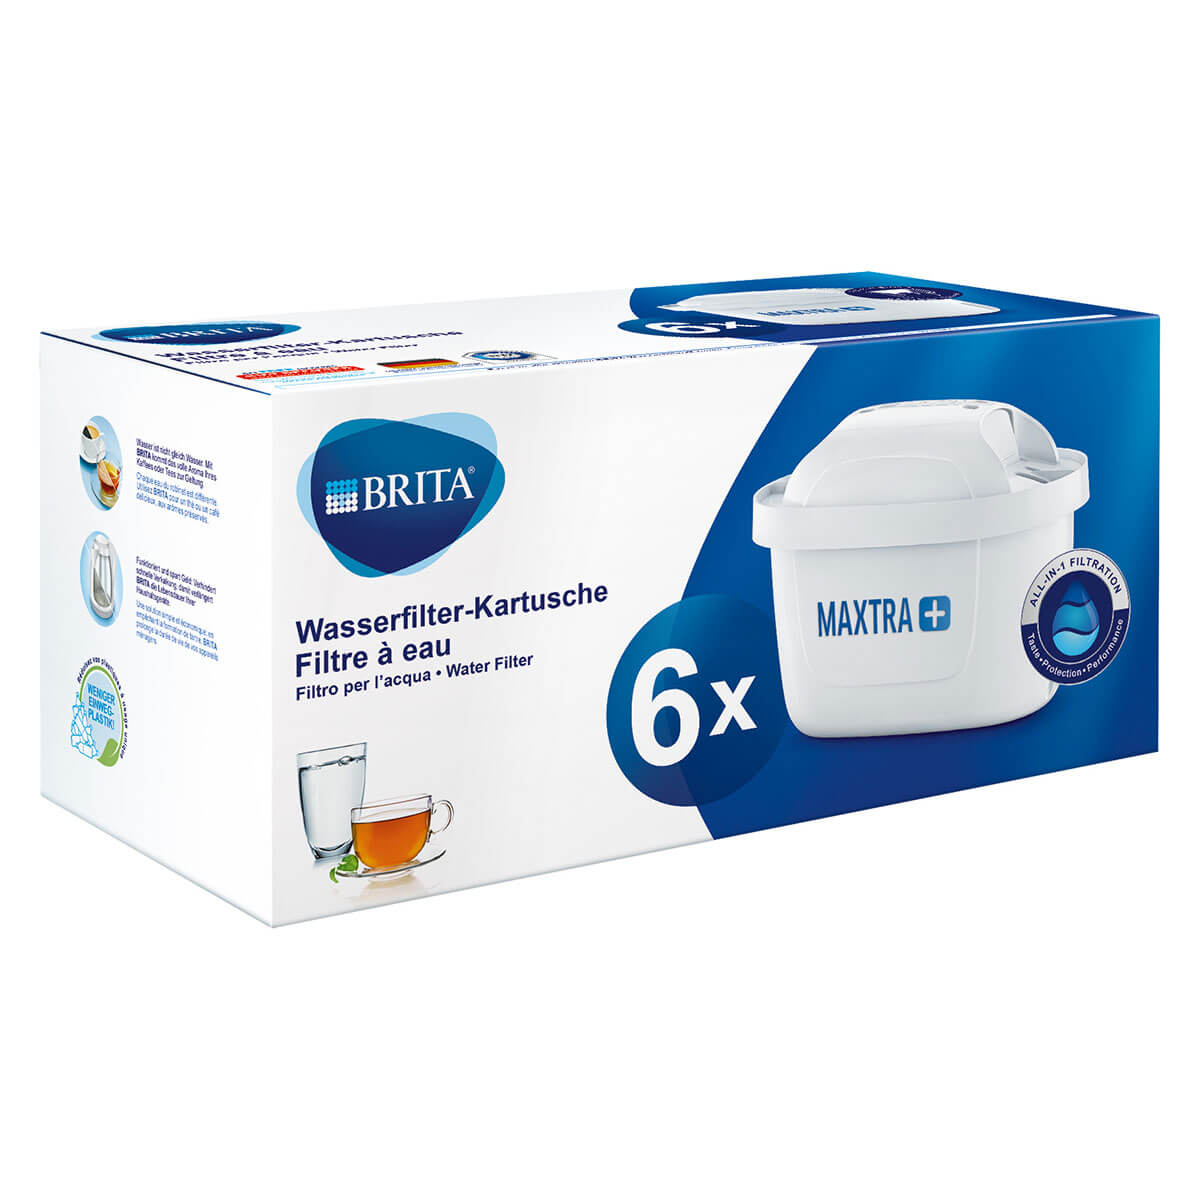 Wasserfilter-Kartusche BRITA® 6er MAXTRA+